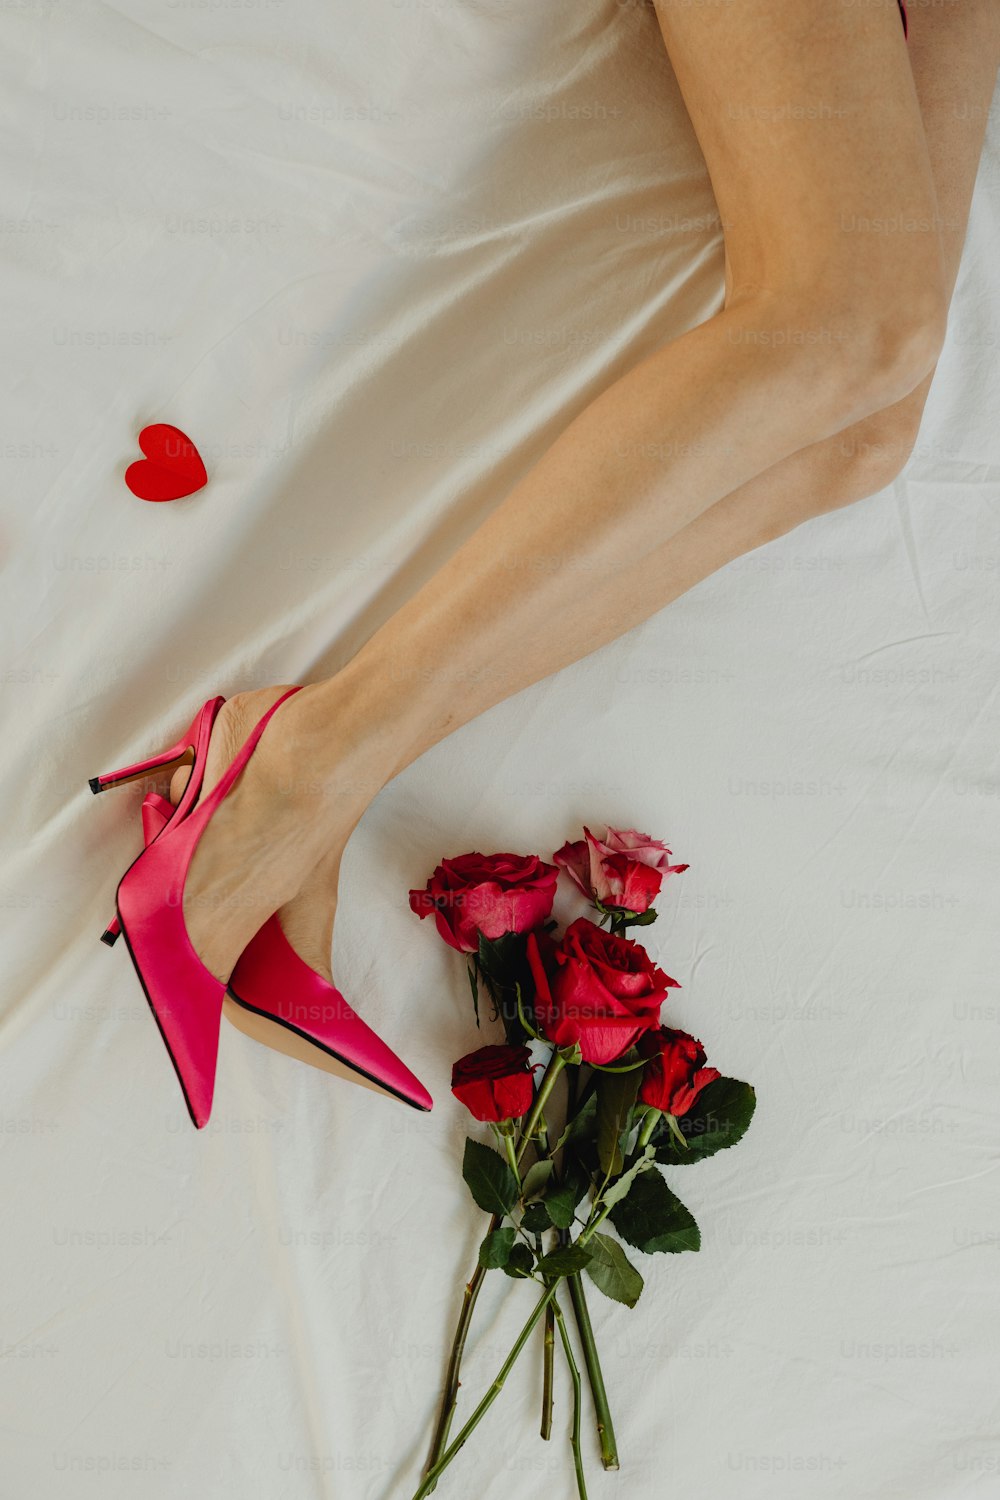 Una mujer acostada en una cama con un ramo de rosas